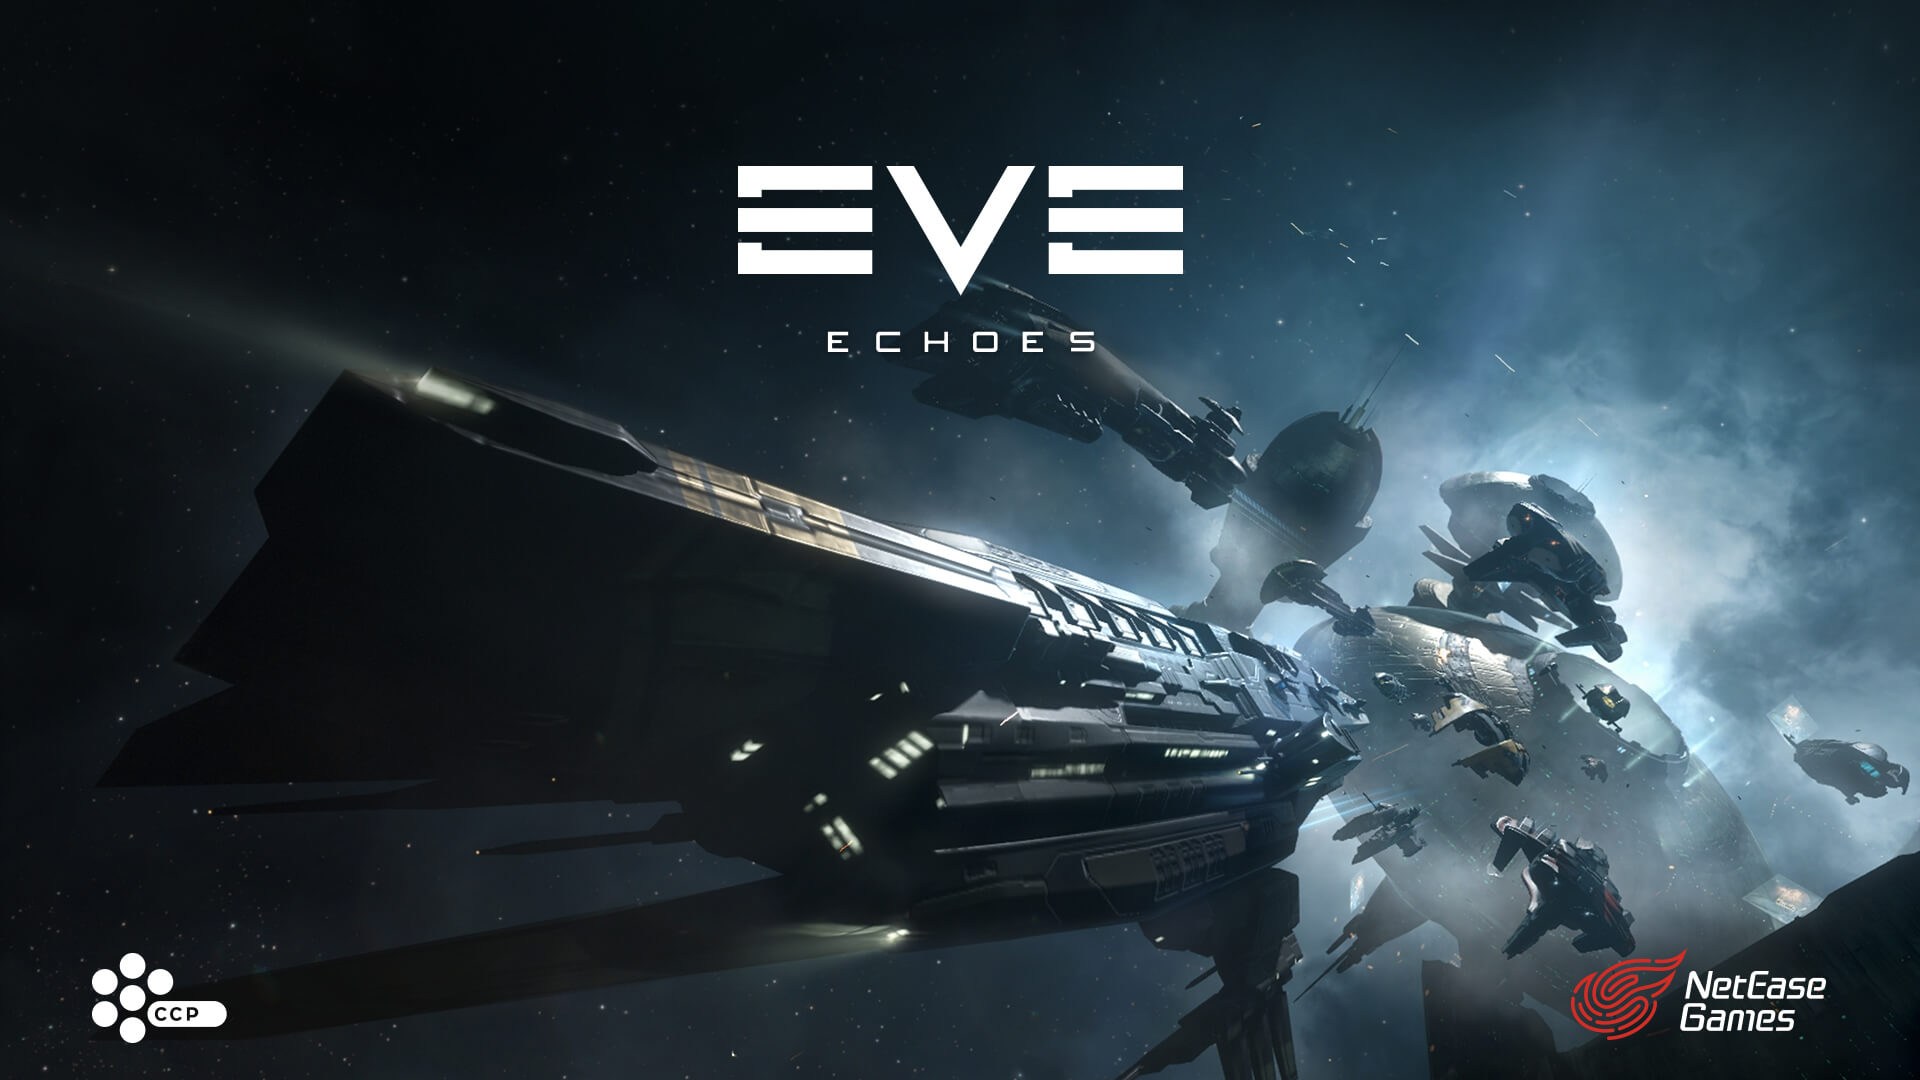 اللعبة المُنتظرة EVE Echoes متاحة الآن كإصدار تجريبي ومحدود على أندرويد.